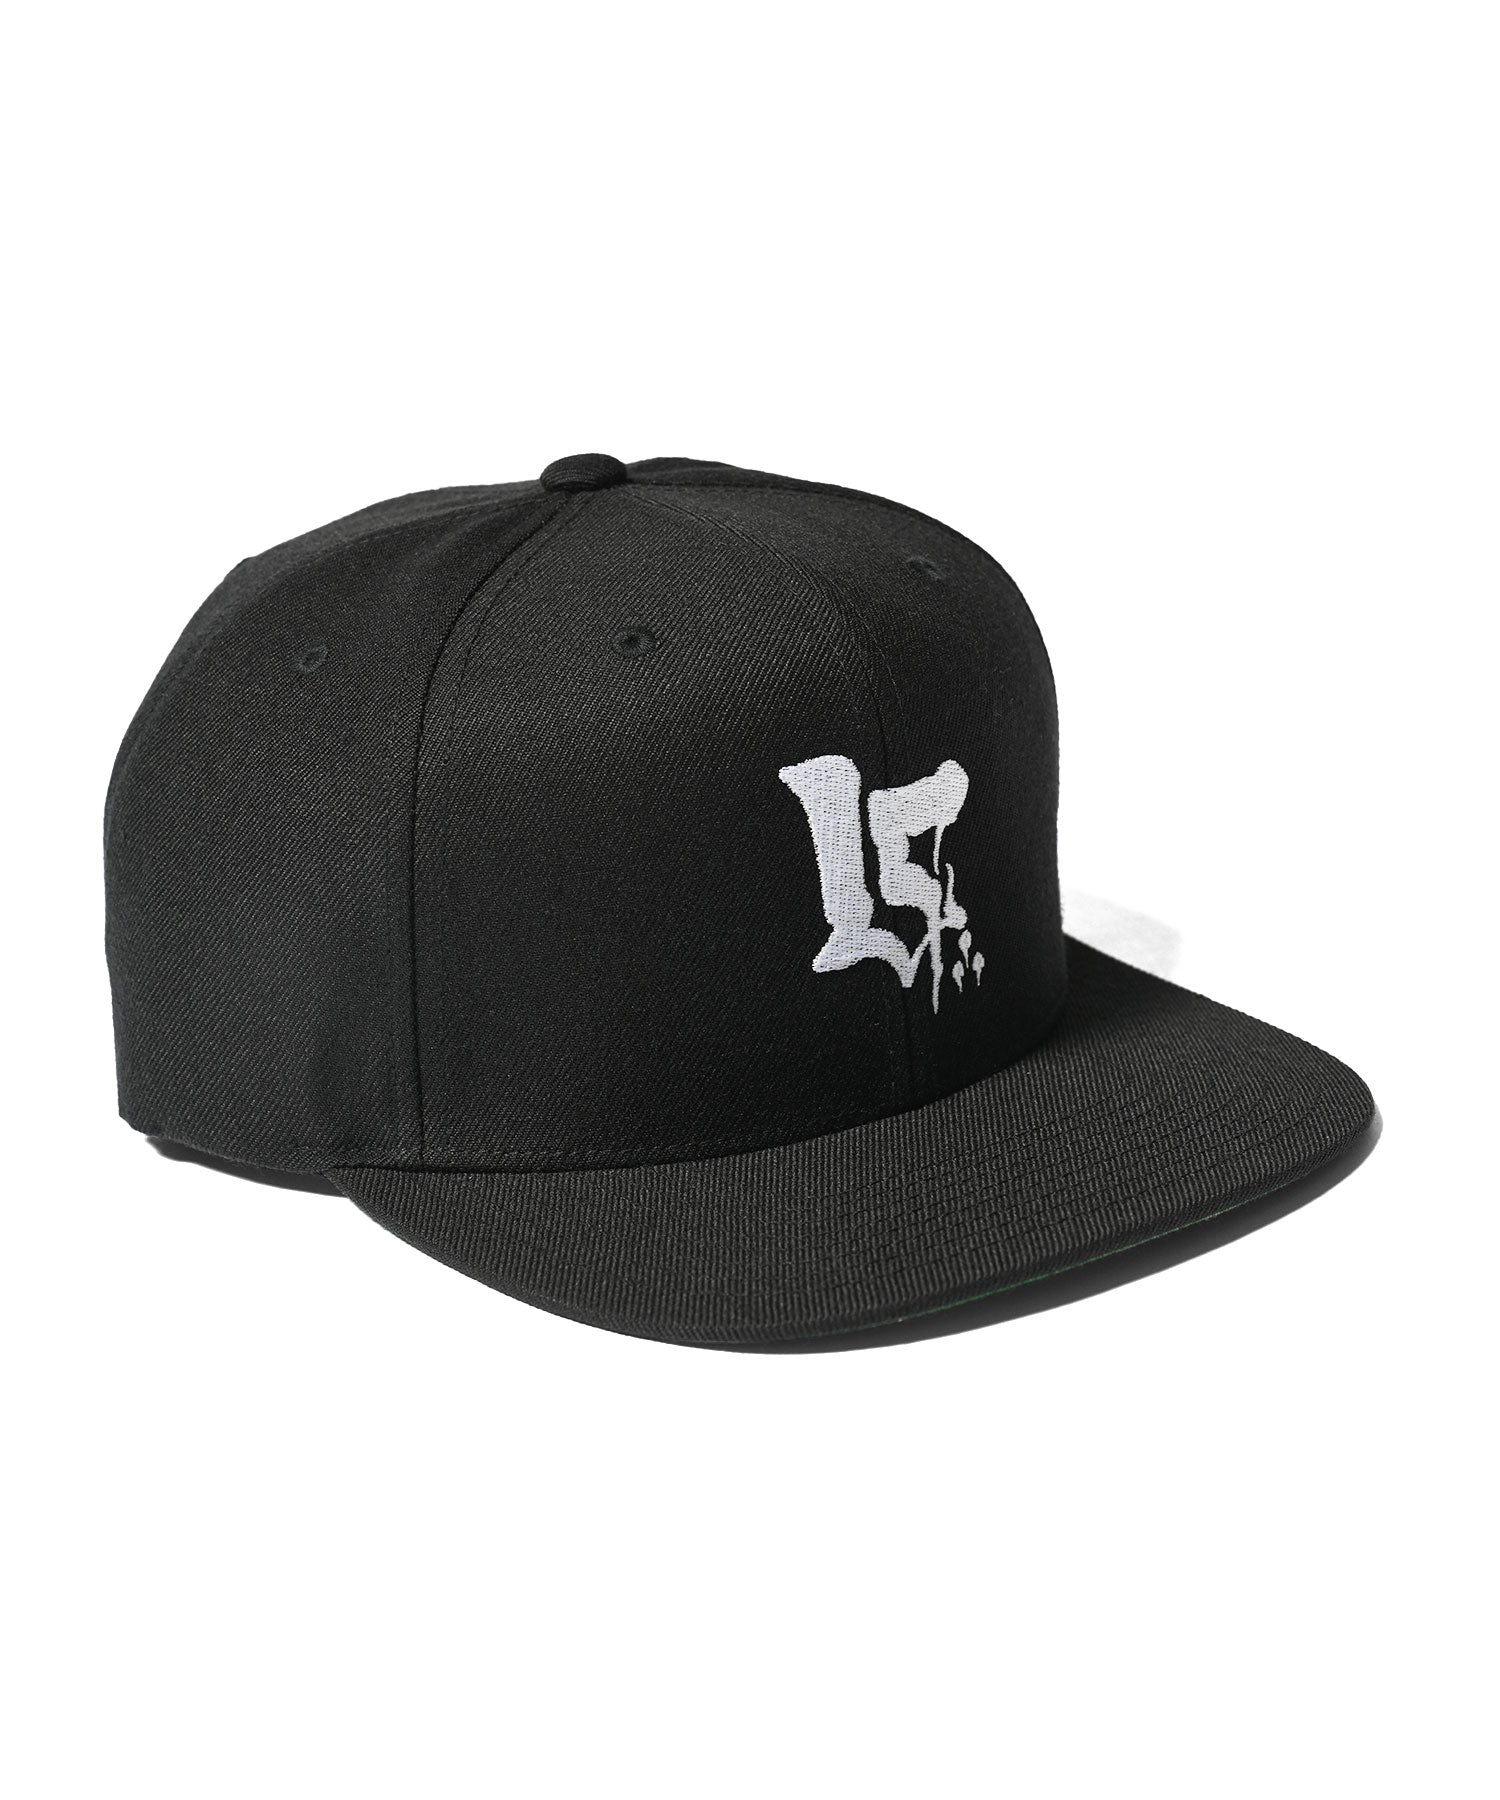 LFYT × KCALS - KCALS LF LOGO CAP